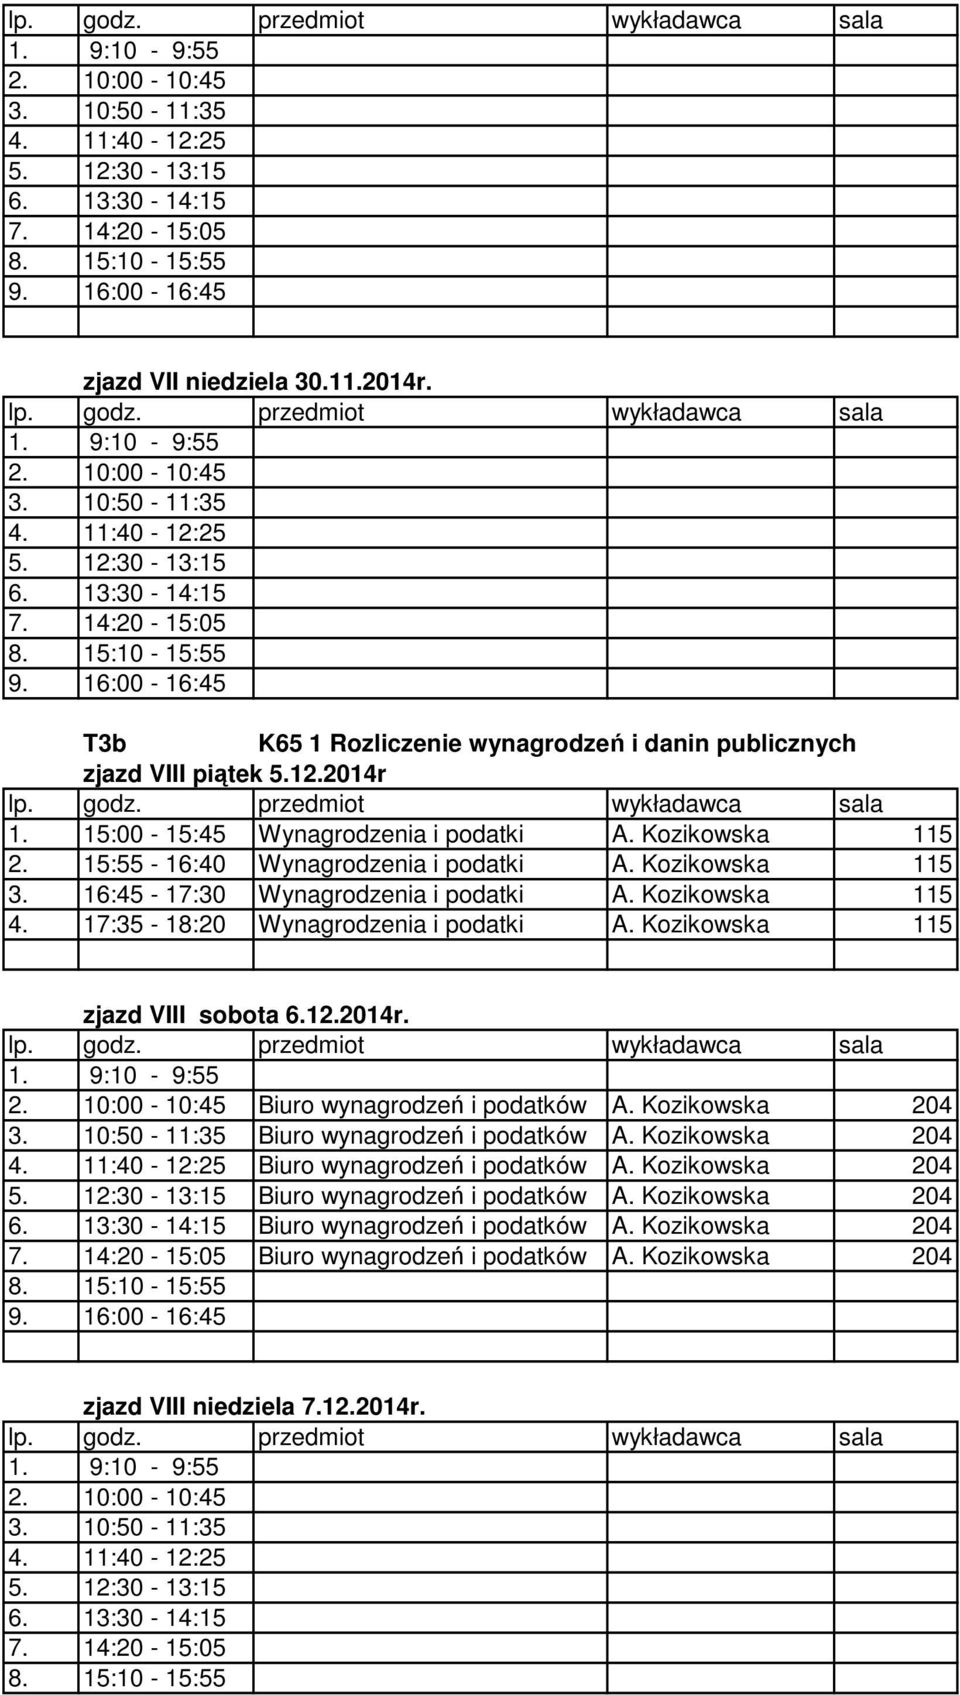 Kozikowska 204 Biuro wynagrodzeń i podatków A. Kozikowska 204 zjazd VIII niedziela 7.12.2014r.